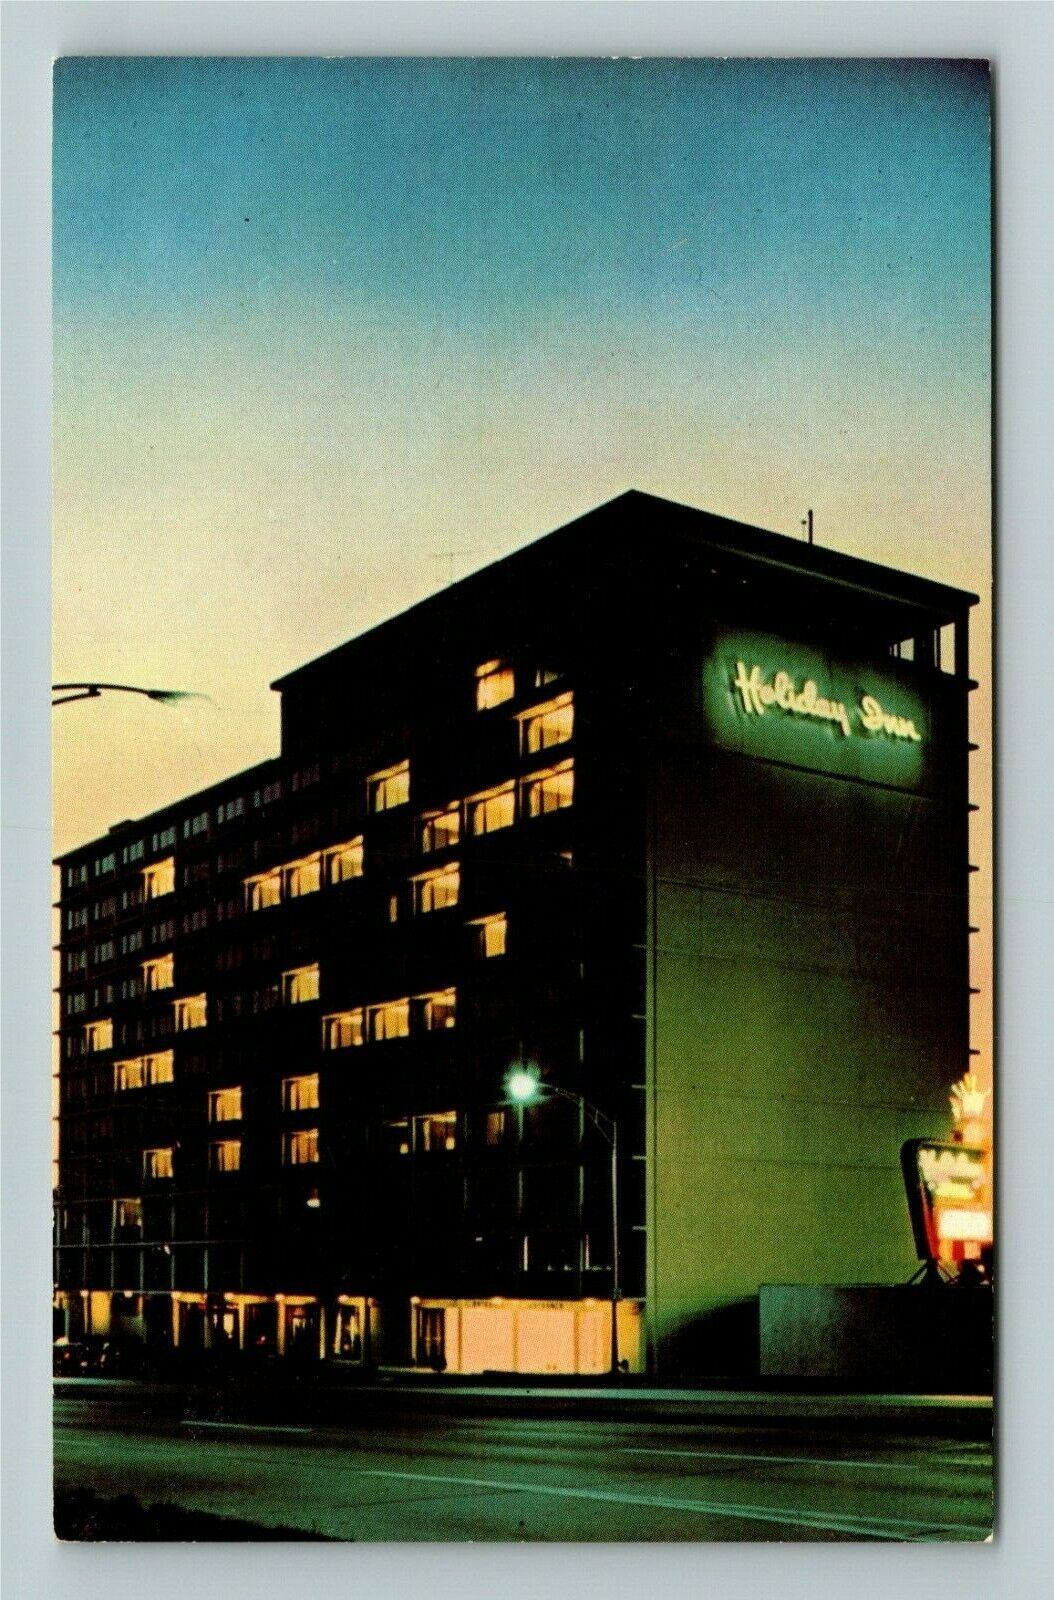 Cincinnati OH-Ohio, Holiday Inn, Advertising, Vintage Postcard